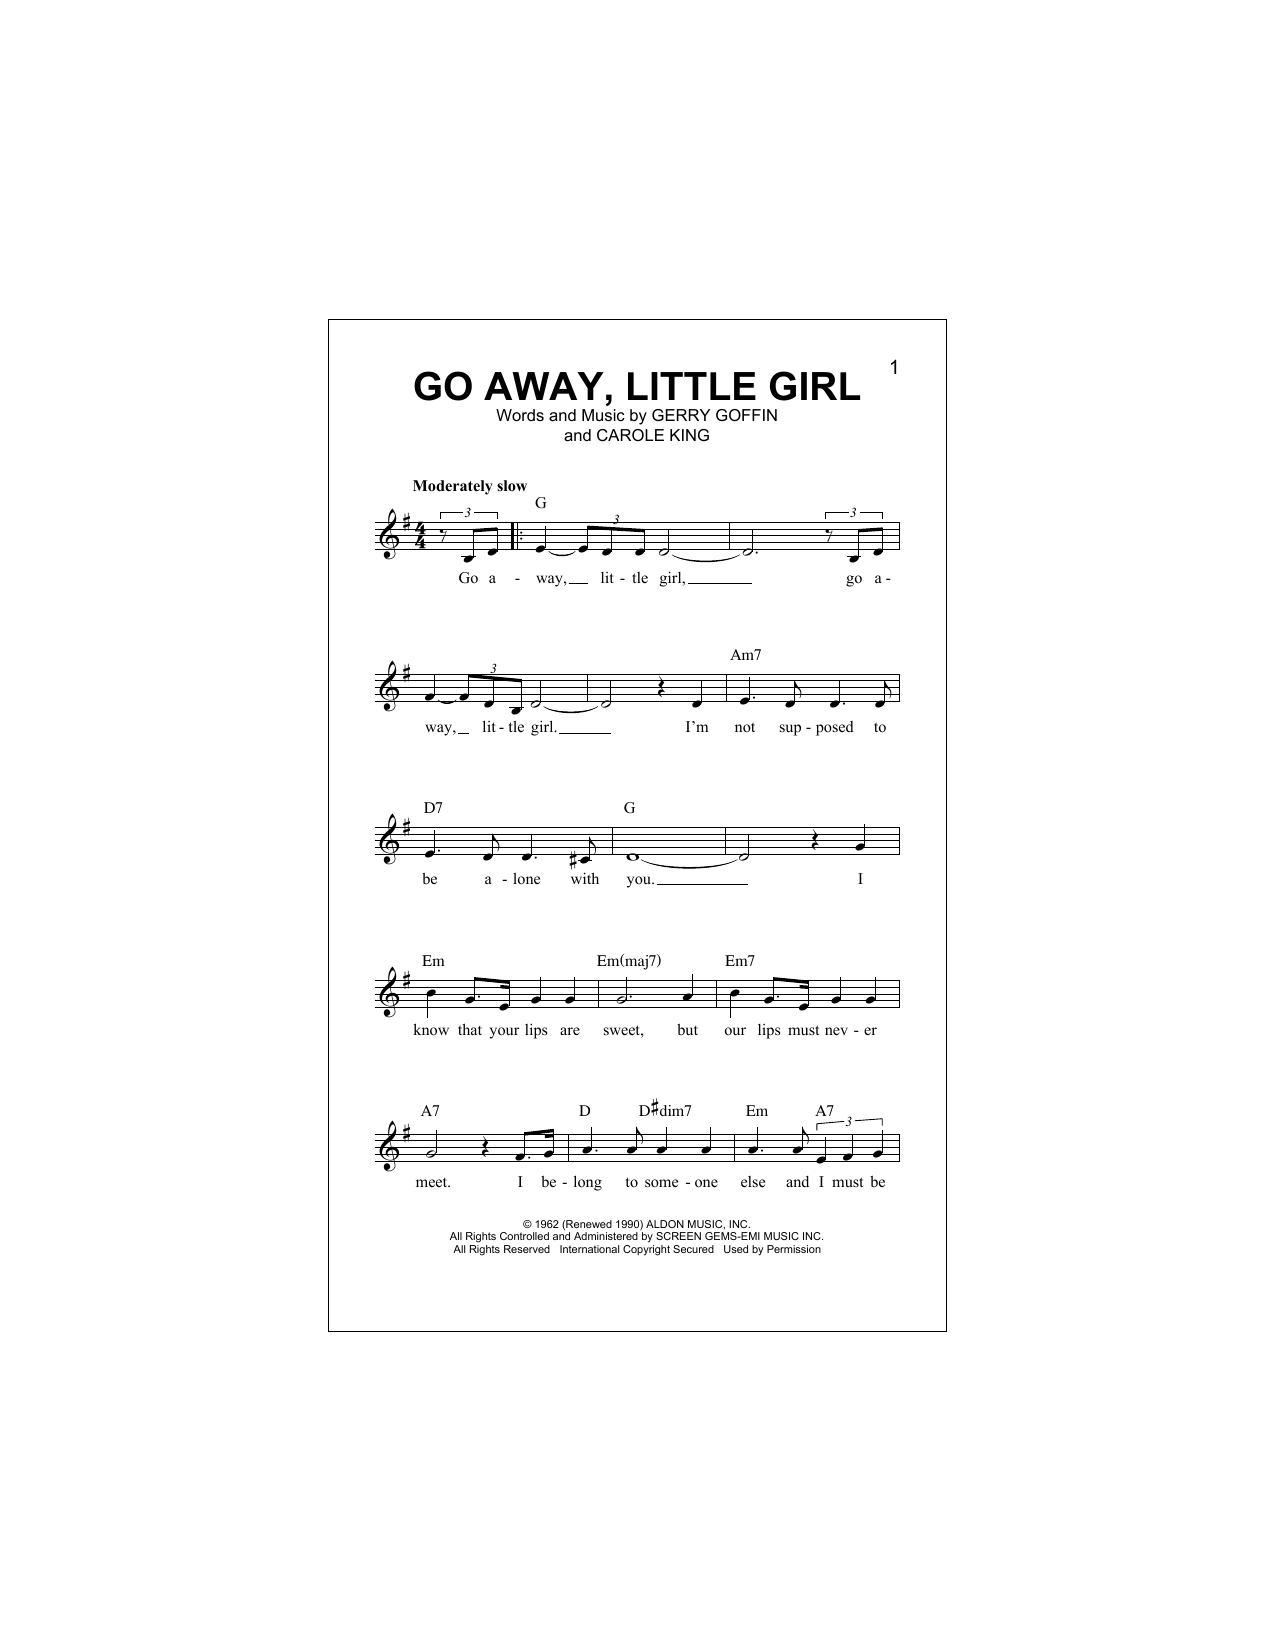 Download Donny Osmond Go Away, Little Girl Sheet Music